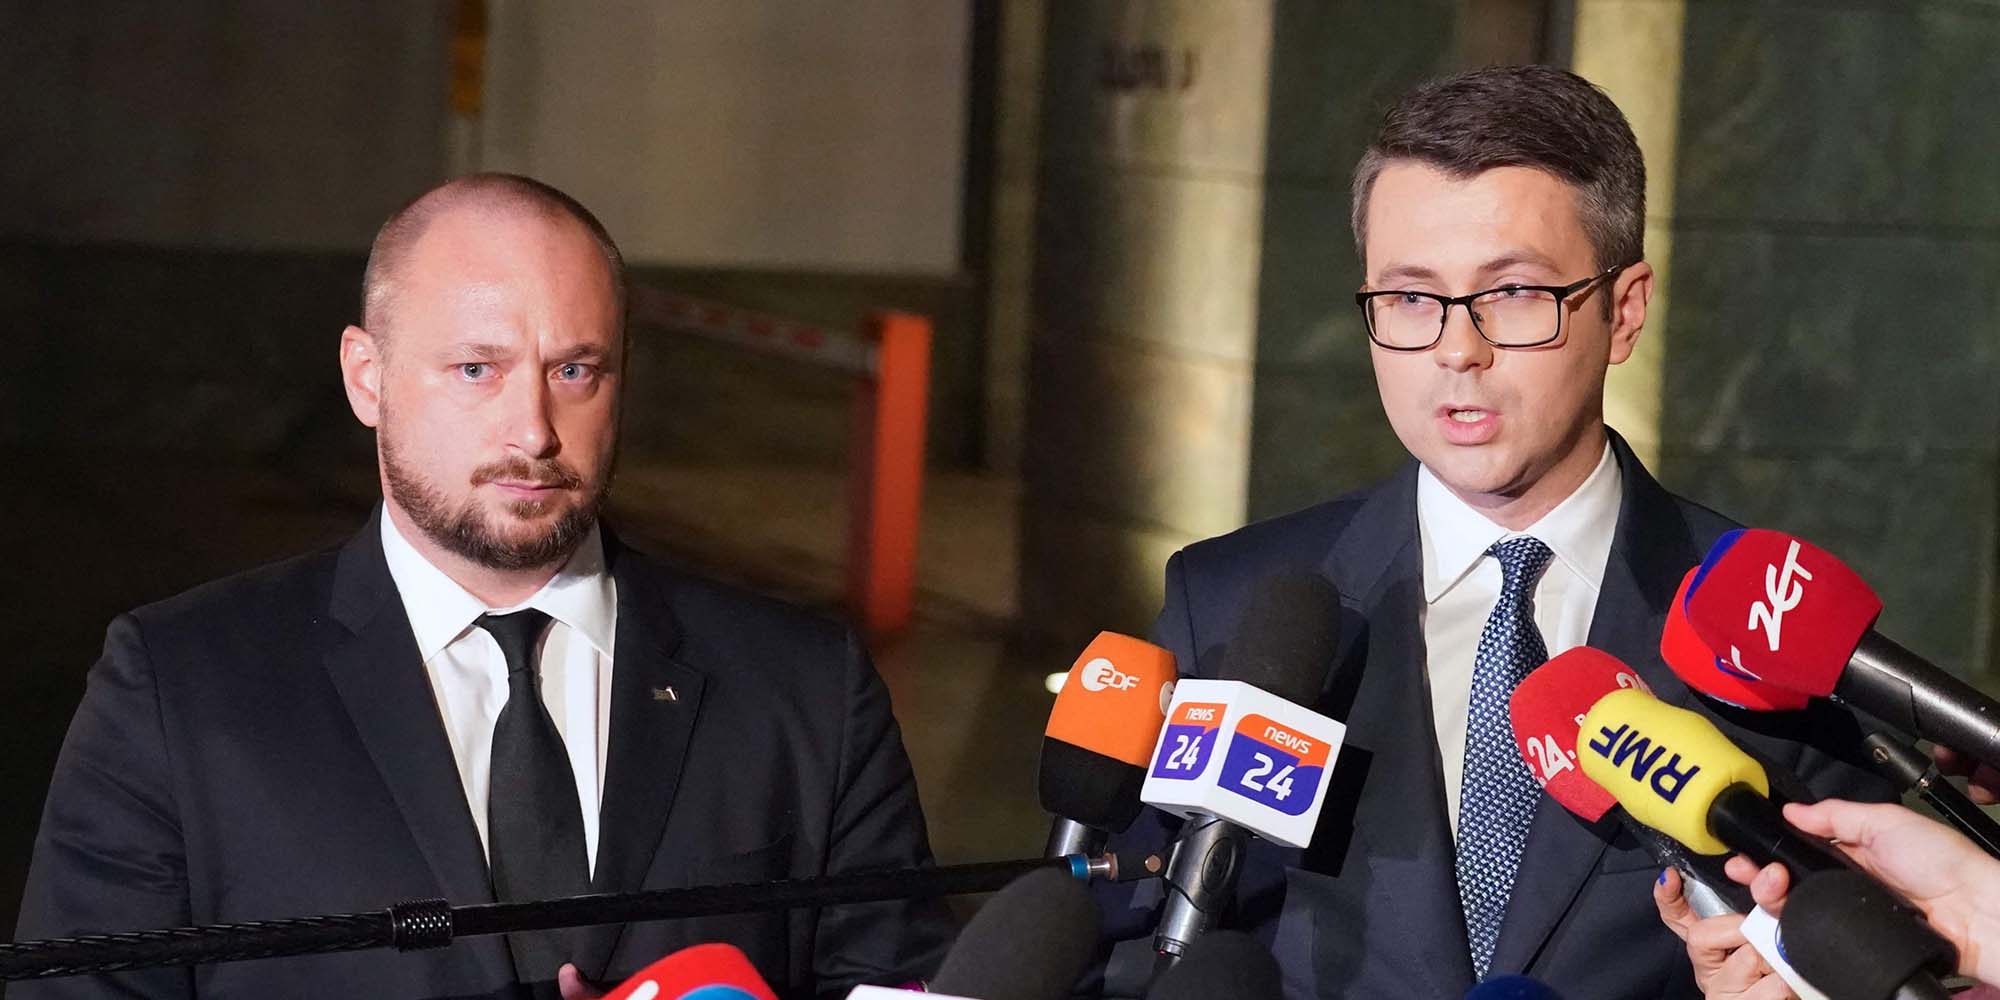 Der Chef von Polens Büro für Nationale Sicherheit, Jacek Siewiersk und der Regierungssprecher Piotr Muller bei einem Statement